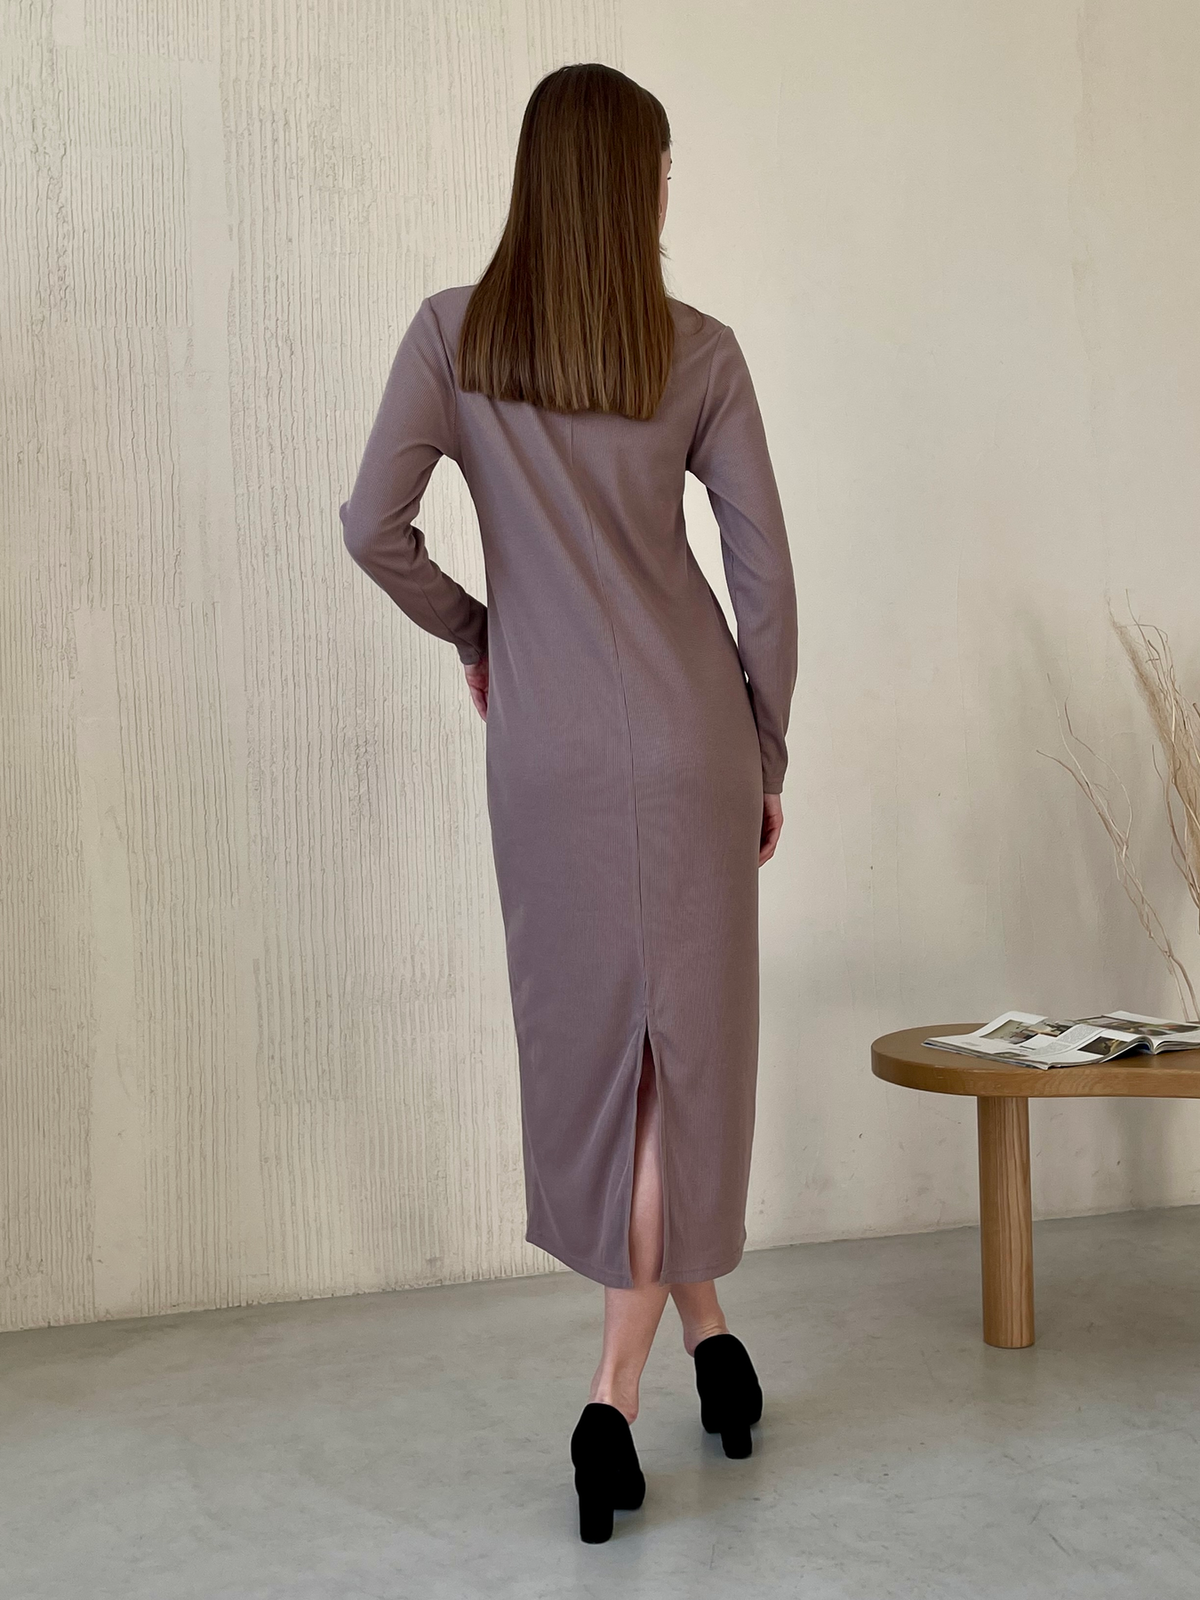 Купить Длинное бежевое платье в рубчик с длинным рукавом Merlini Венето 700001144, размер 42-44 (S-M) в интернет-магазине